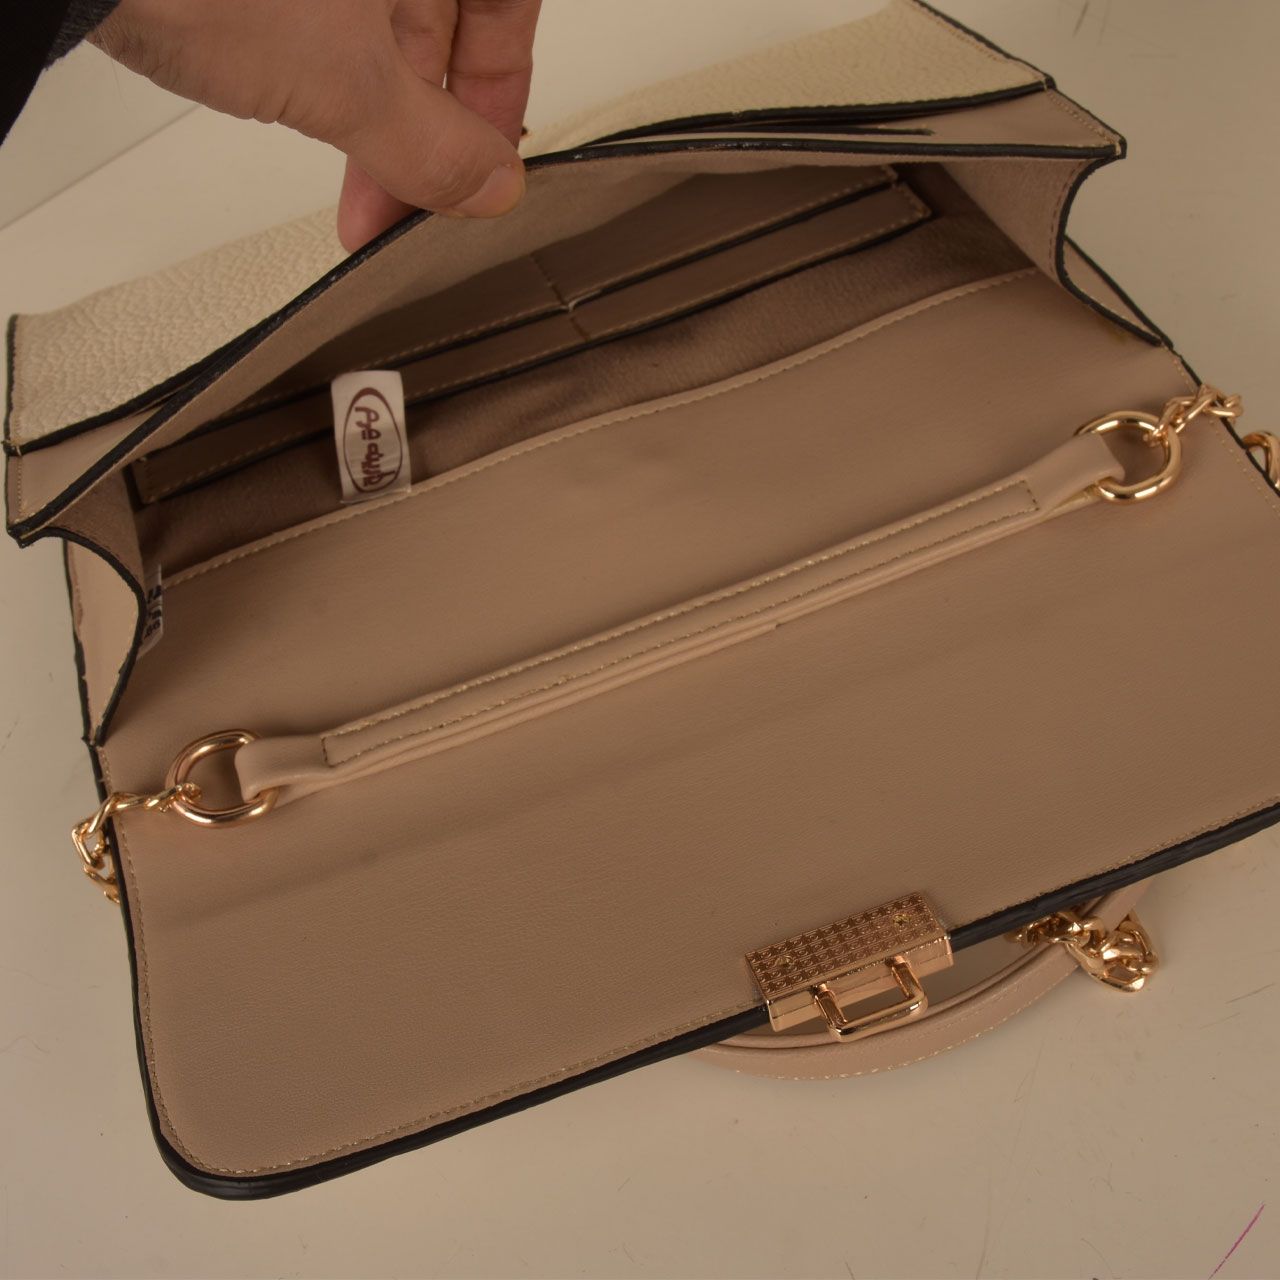 کیف دوشی زنانه پارینه چرم مدل PLV188-12-1510 -  - 15